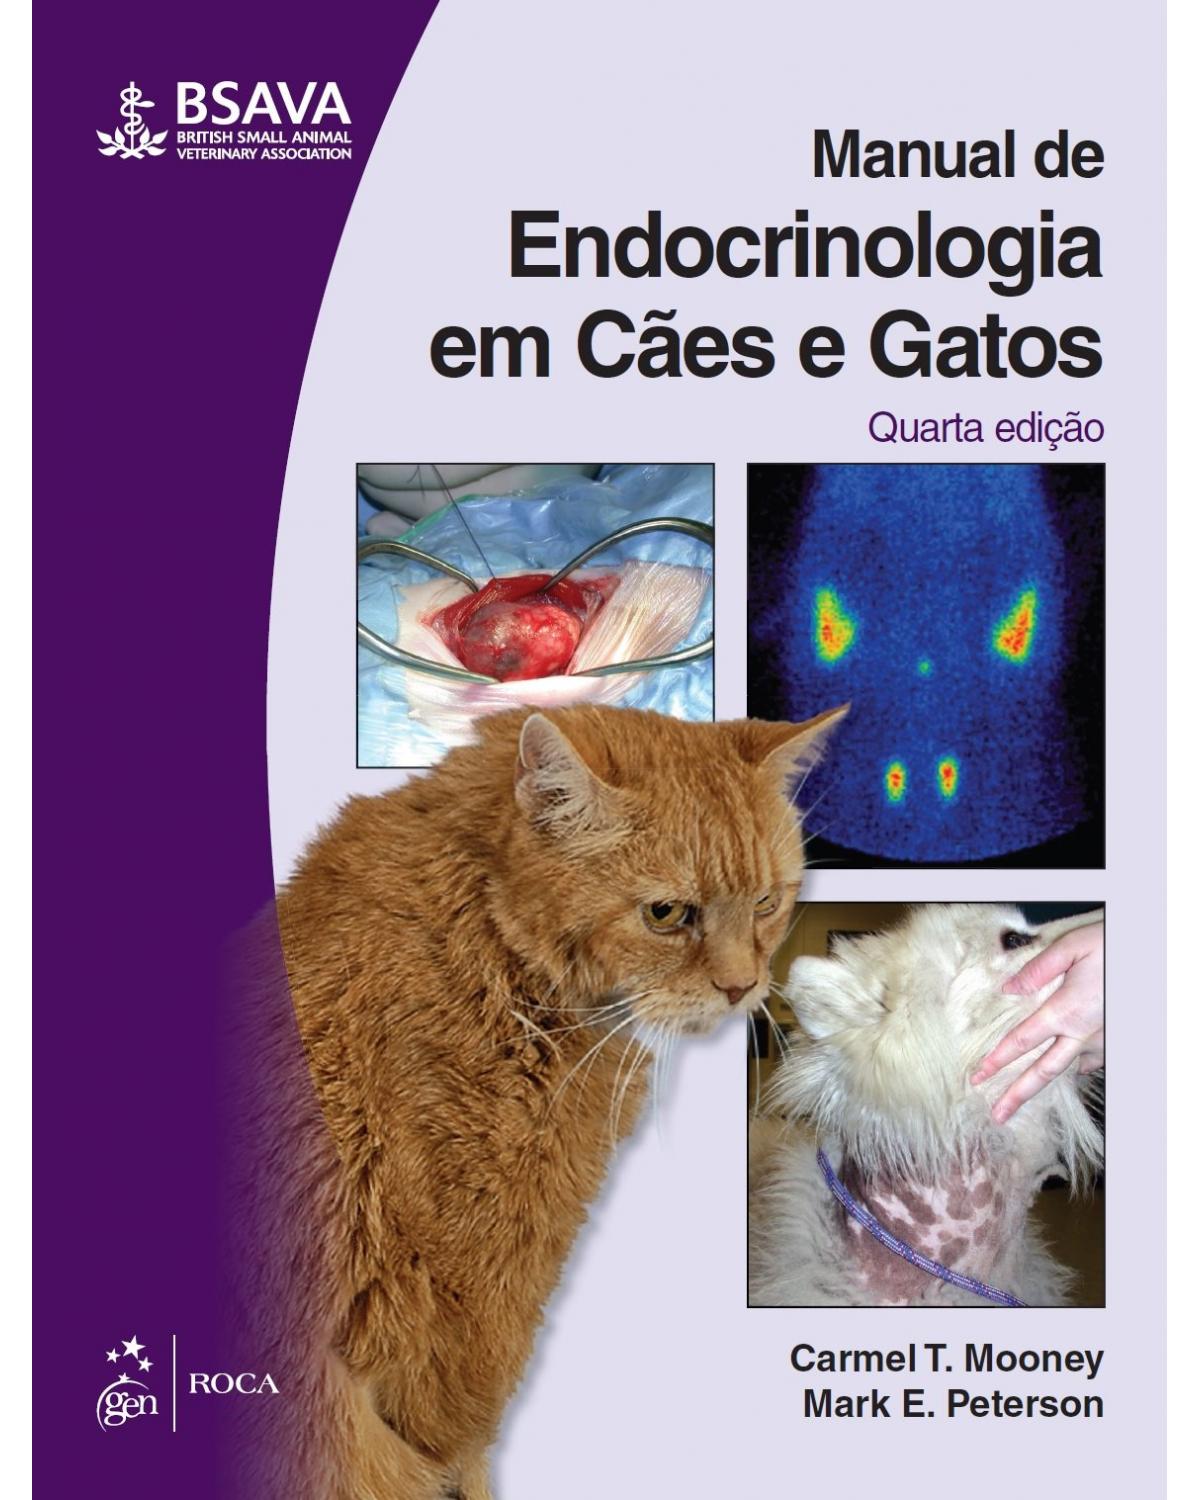 Manual de endocrinologia em cães e gatos - 4ª Edição | 2015